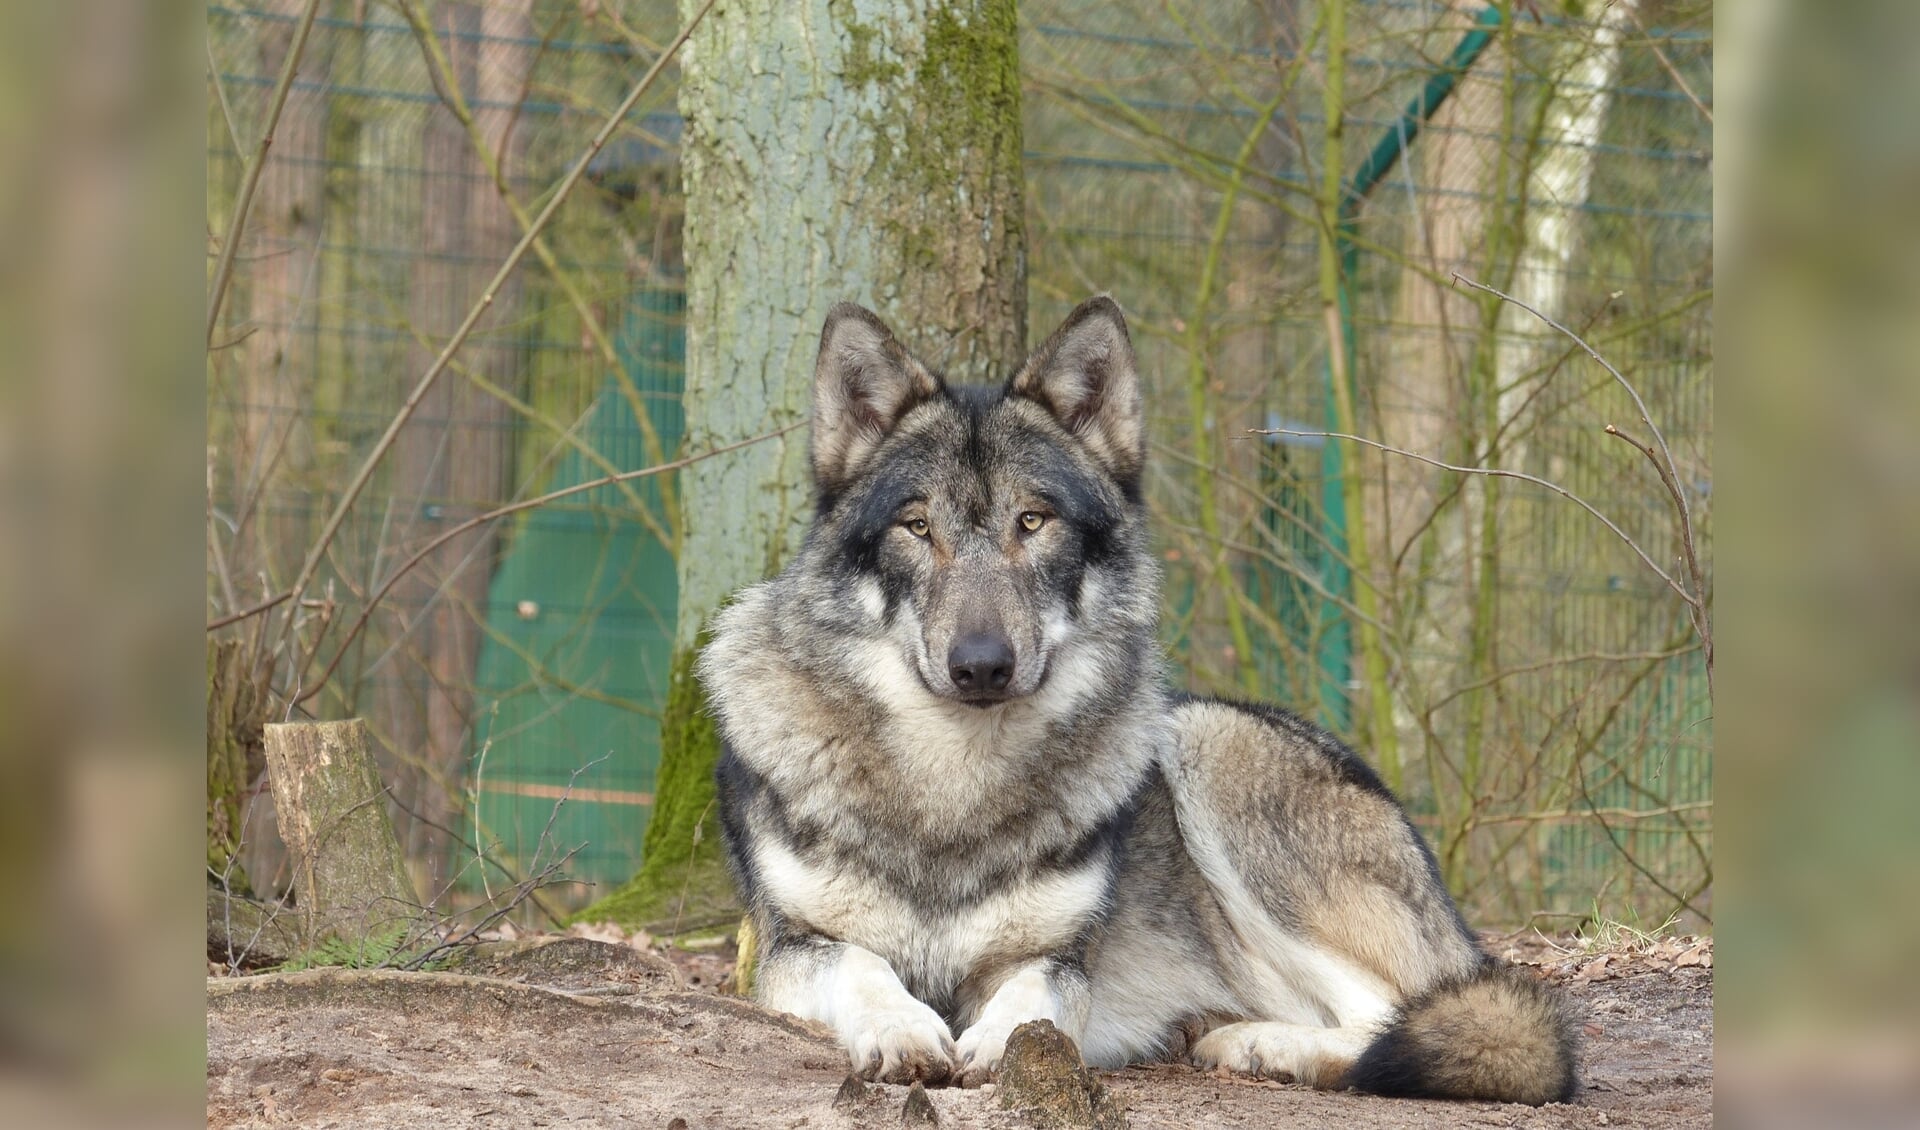 Een wolf in een dierentuin. Stichting Wolvenhek Fryslân vreest met namewilde wolven die zich steeds meer over Europa verspreiden.